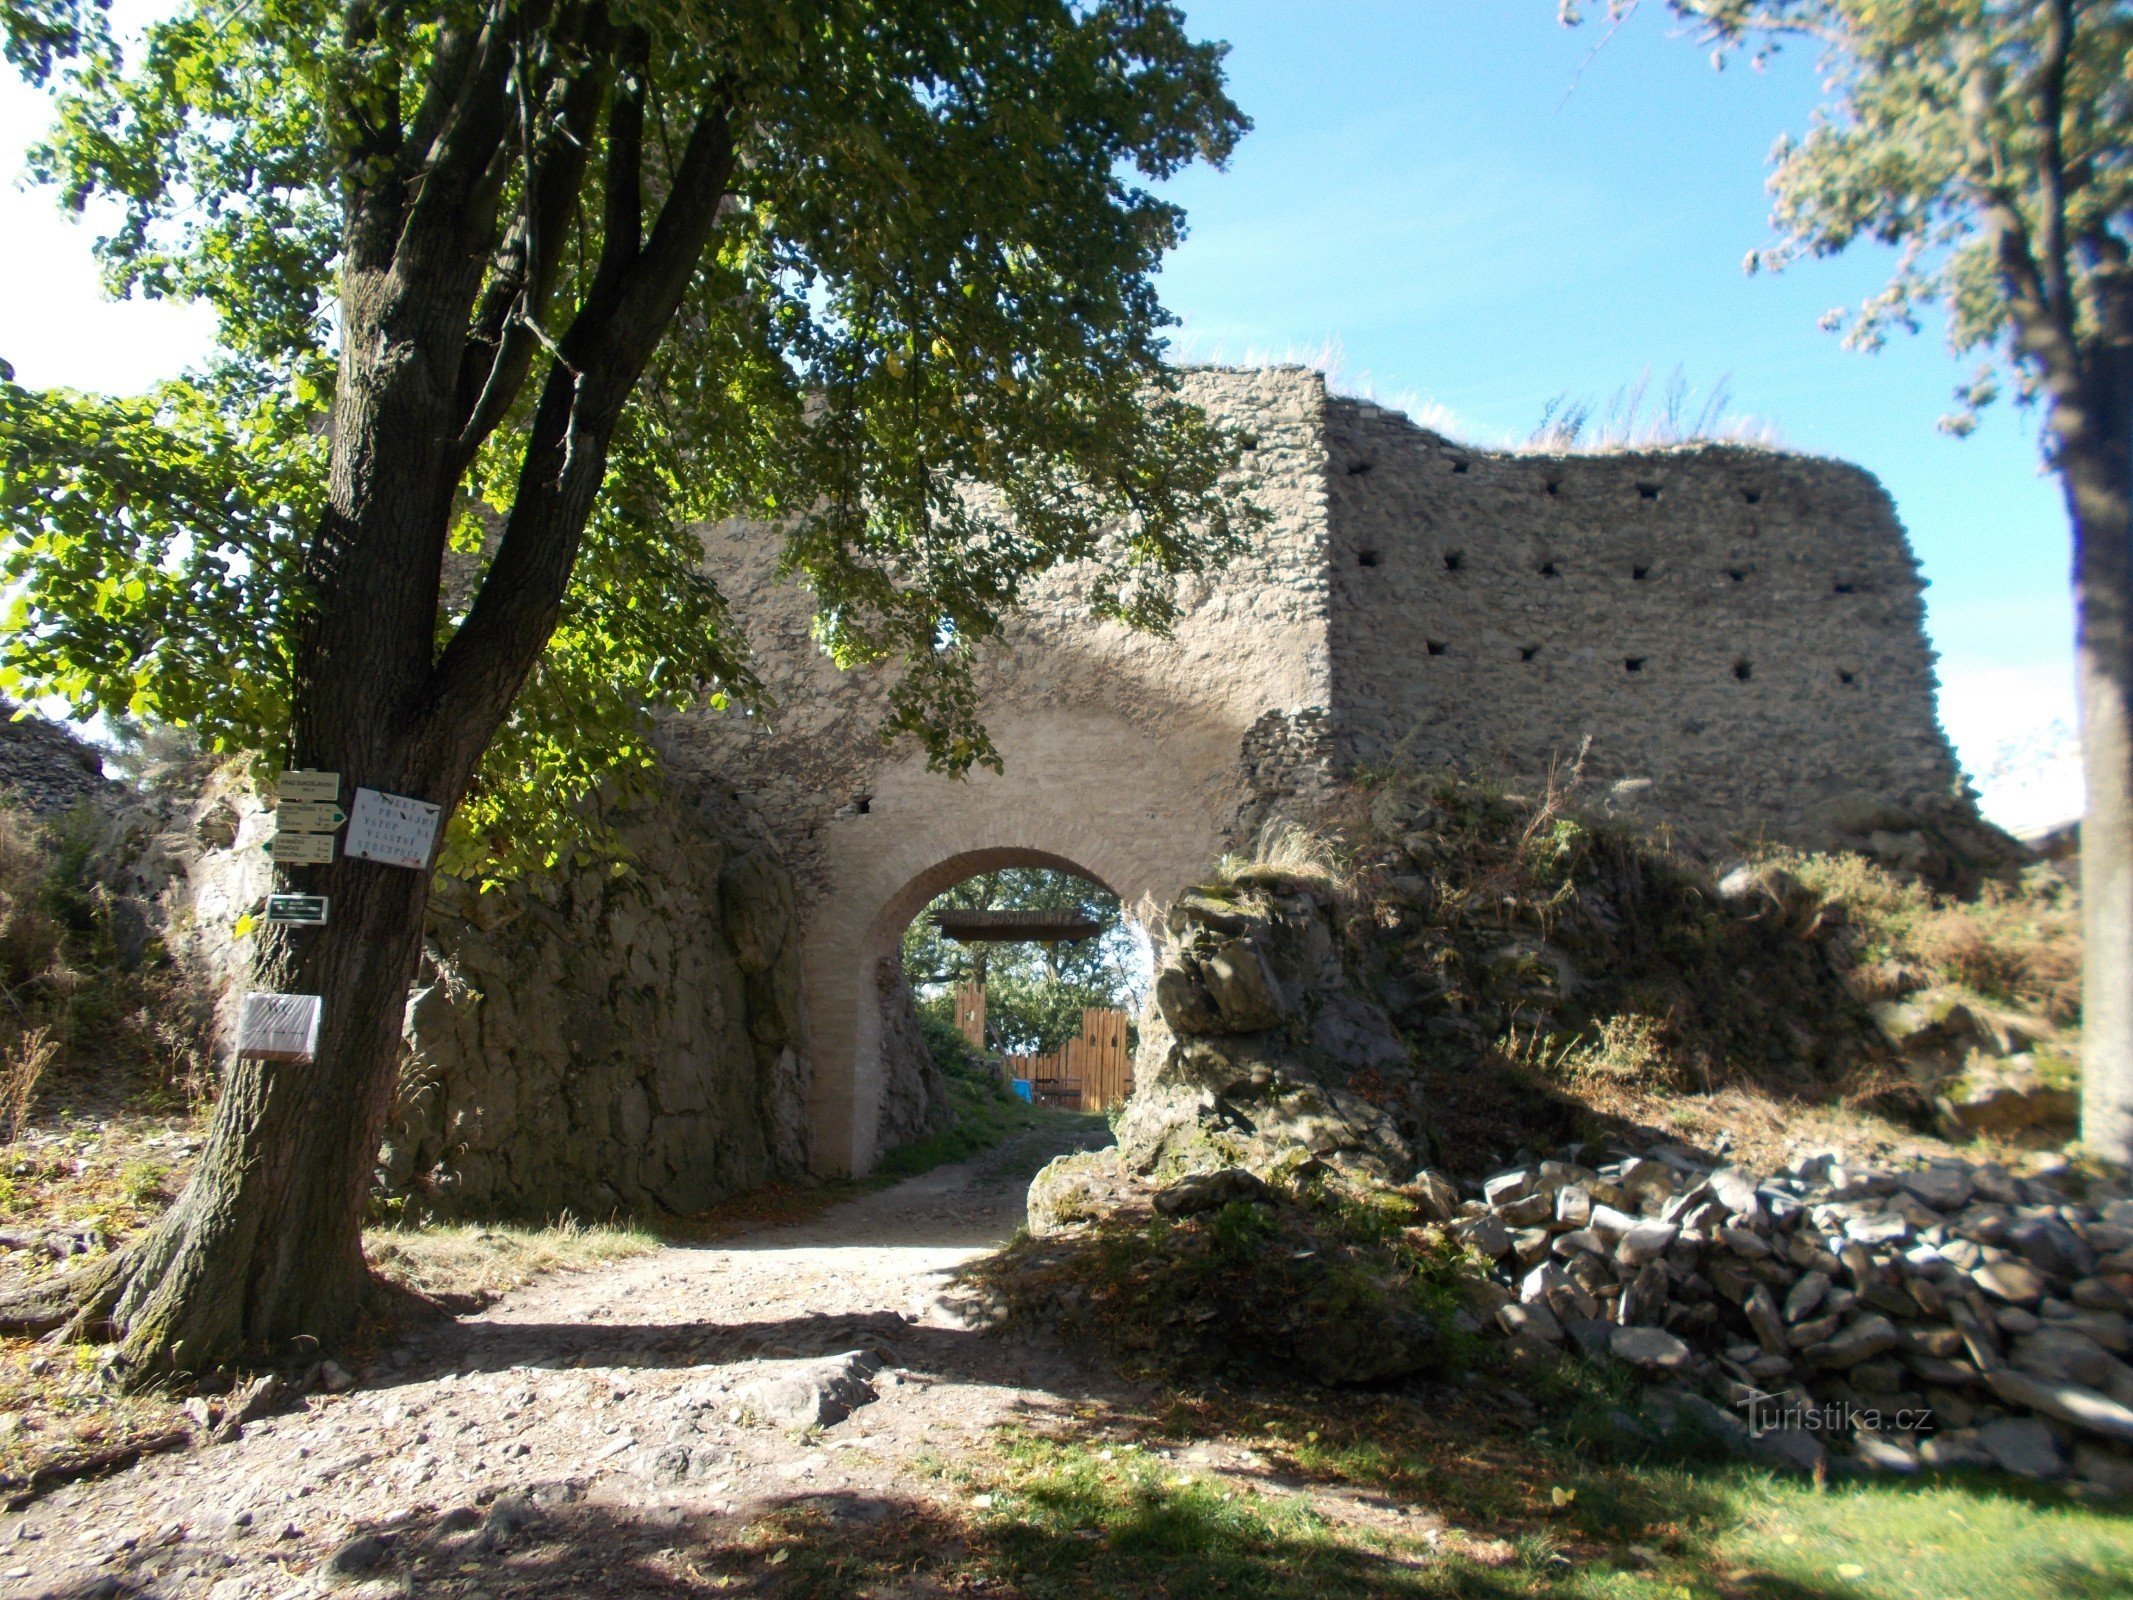 Vstupní brána do hradu Sukoslav (Kostomlaty).